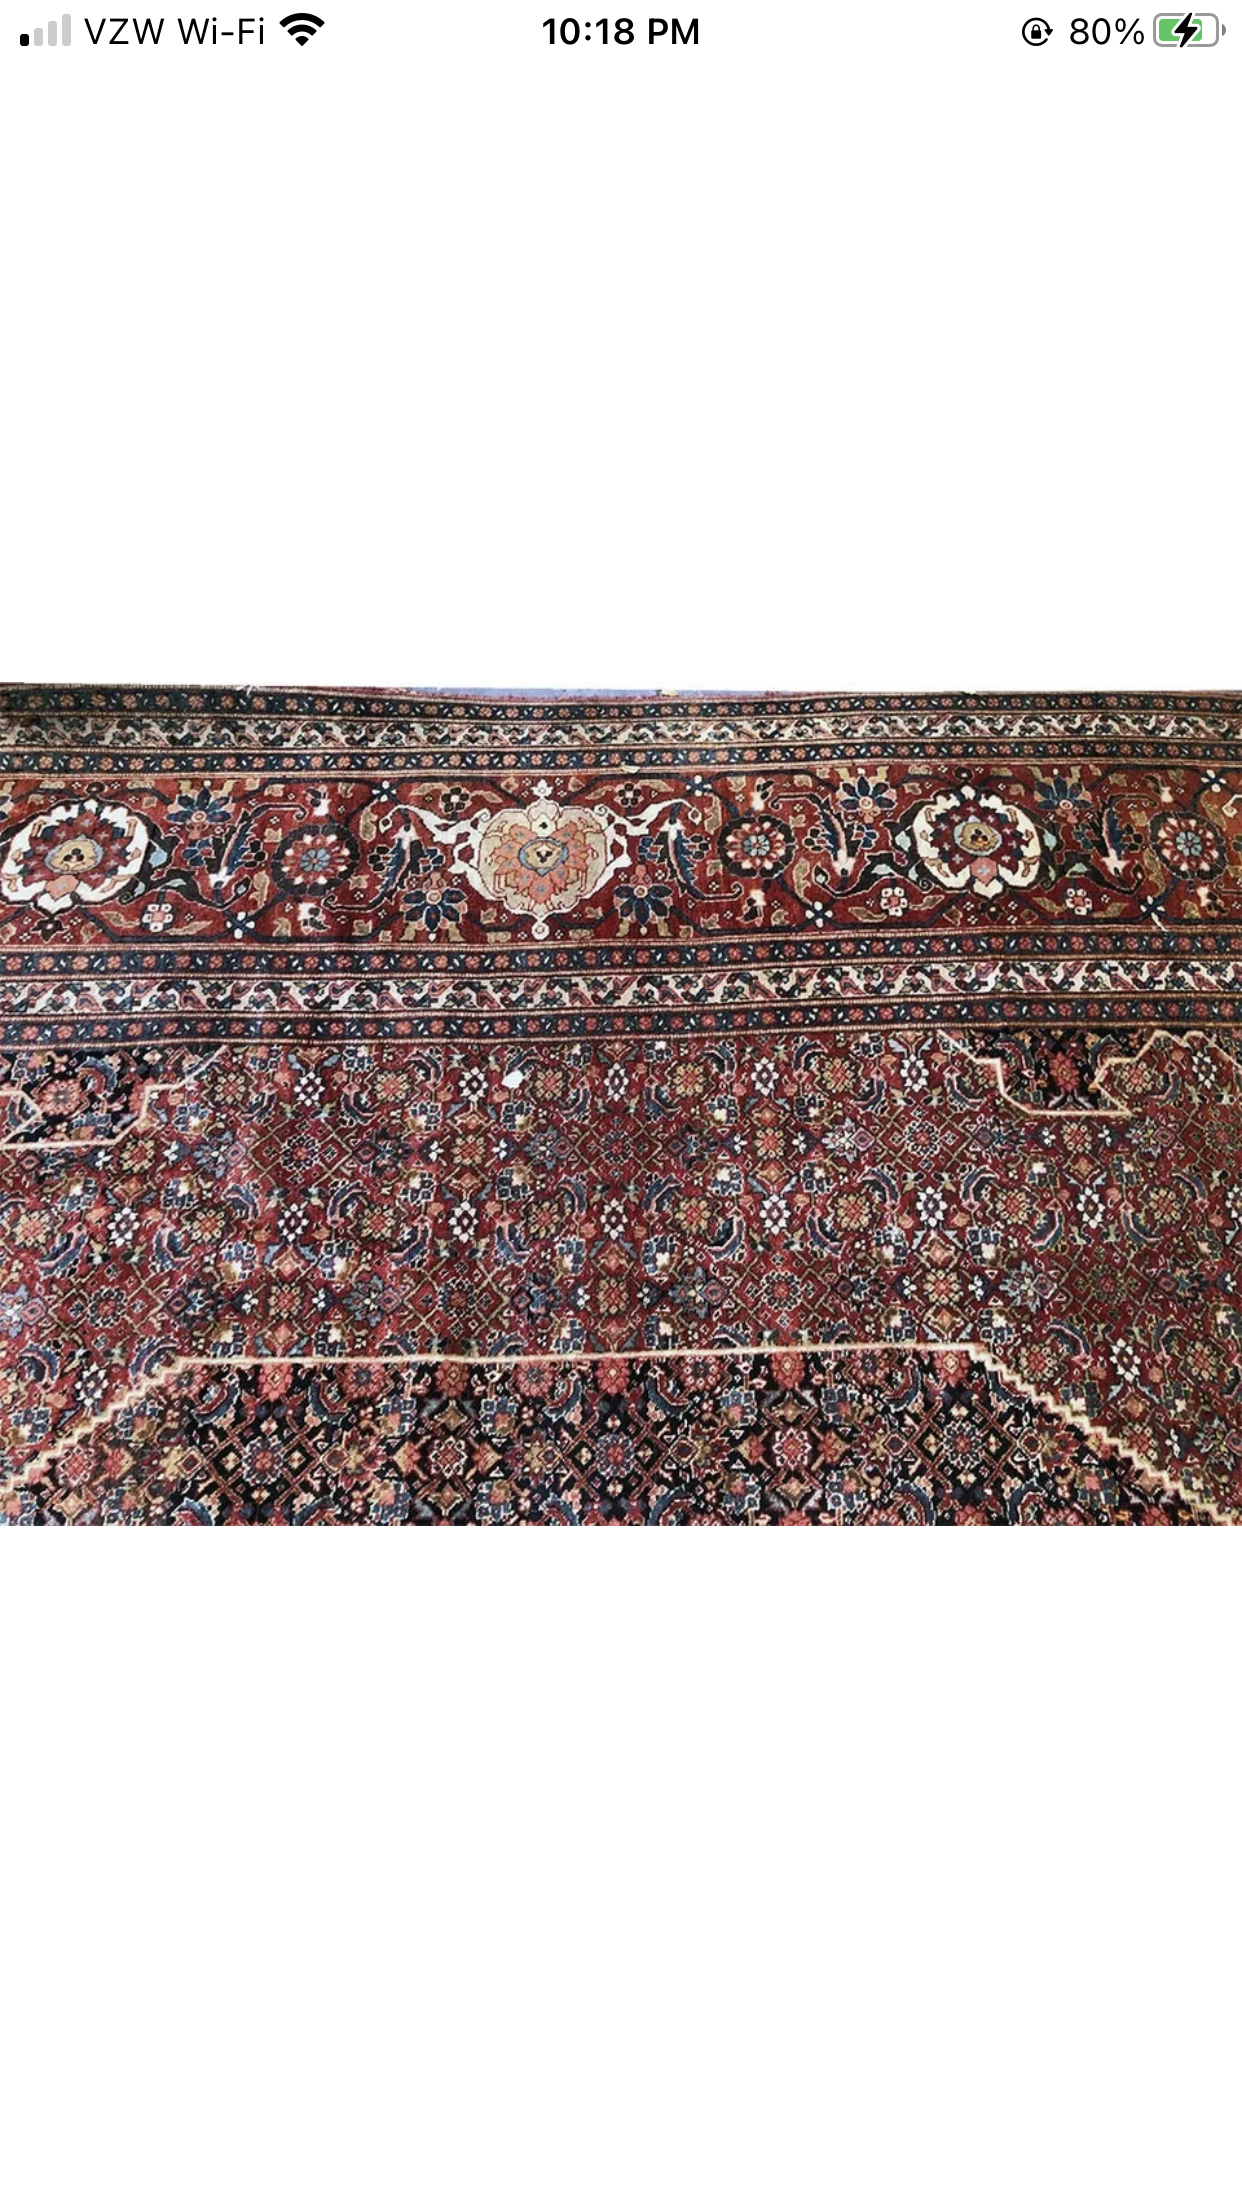 Antique Palace Size 11’ x 19’ Persian Haji Jalili Style Tabriz Rug